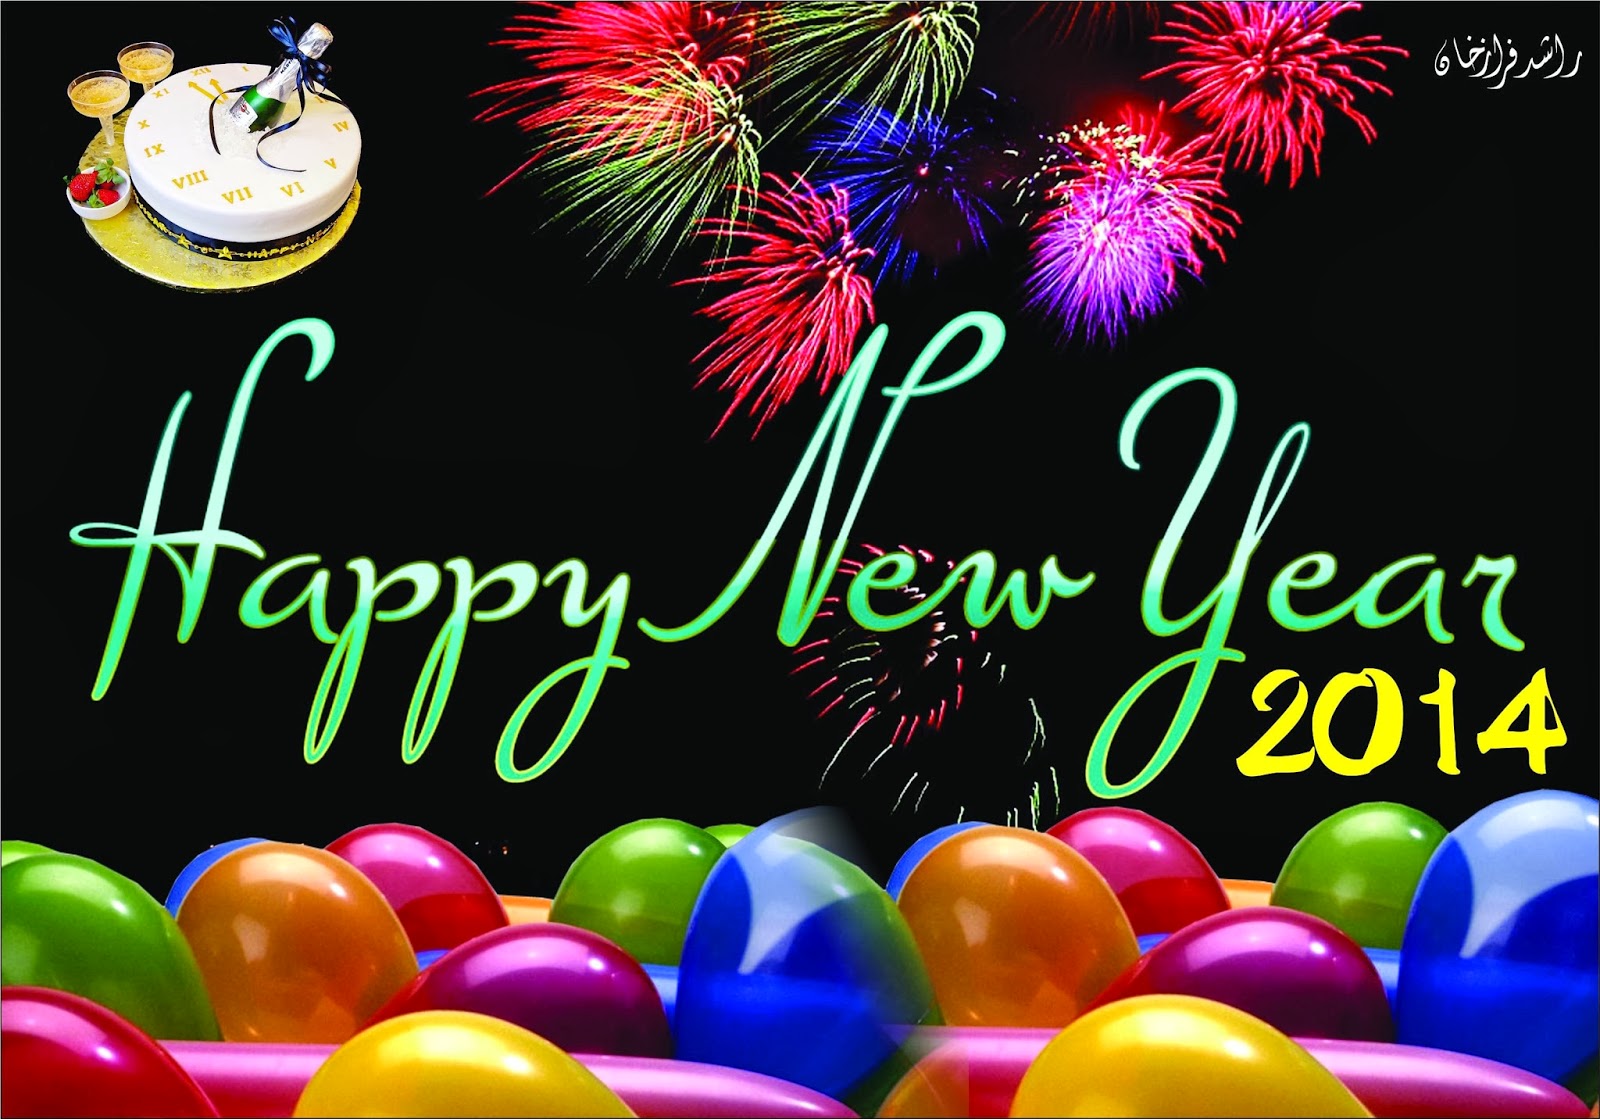 Ucapan Selamat Tahun Baru 2014 Dalam Bahasa Inggris Dan Artinya